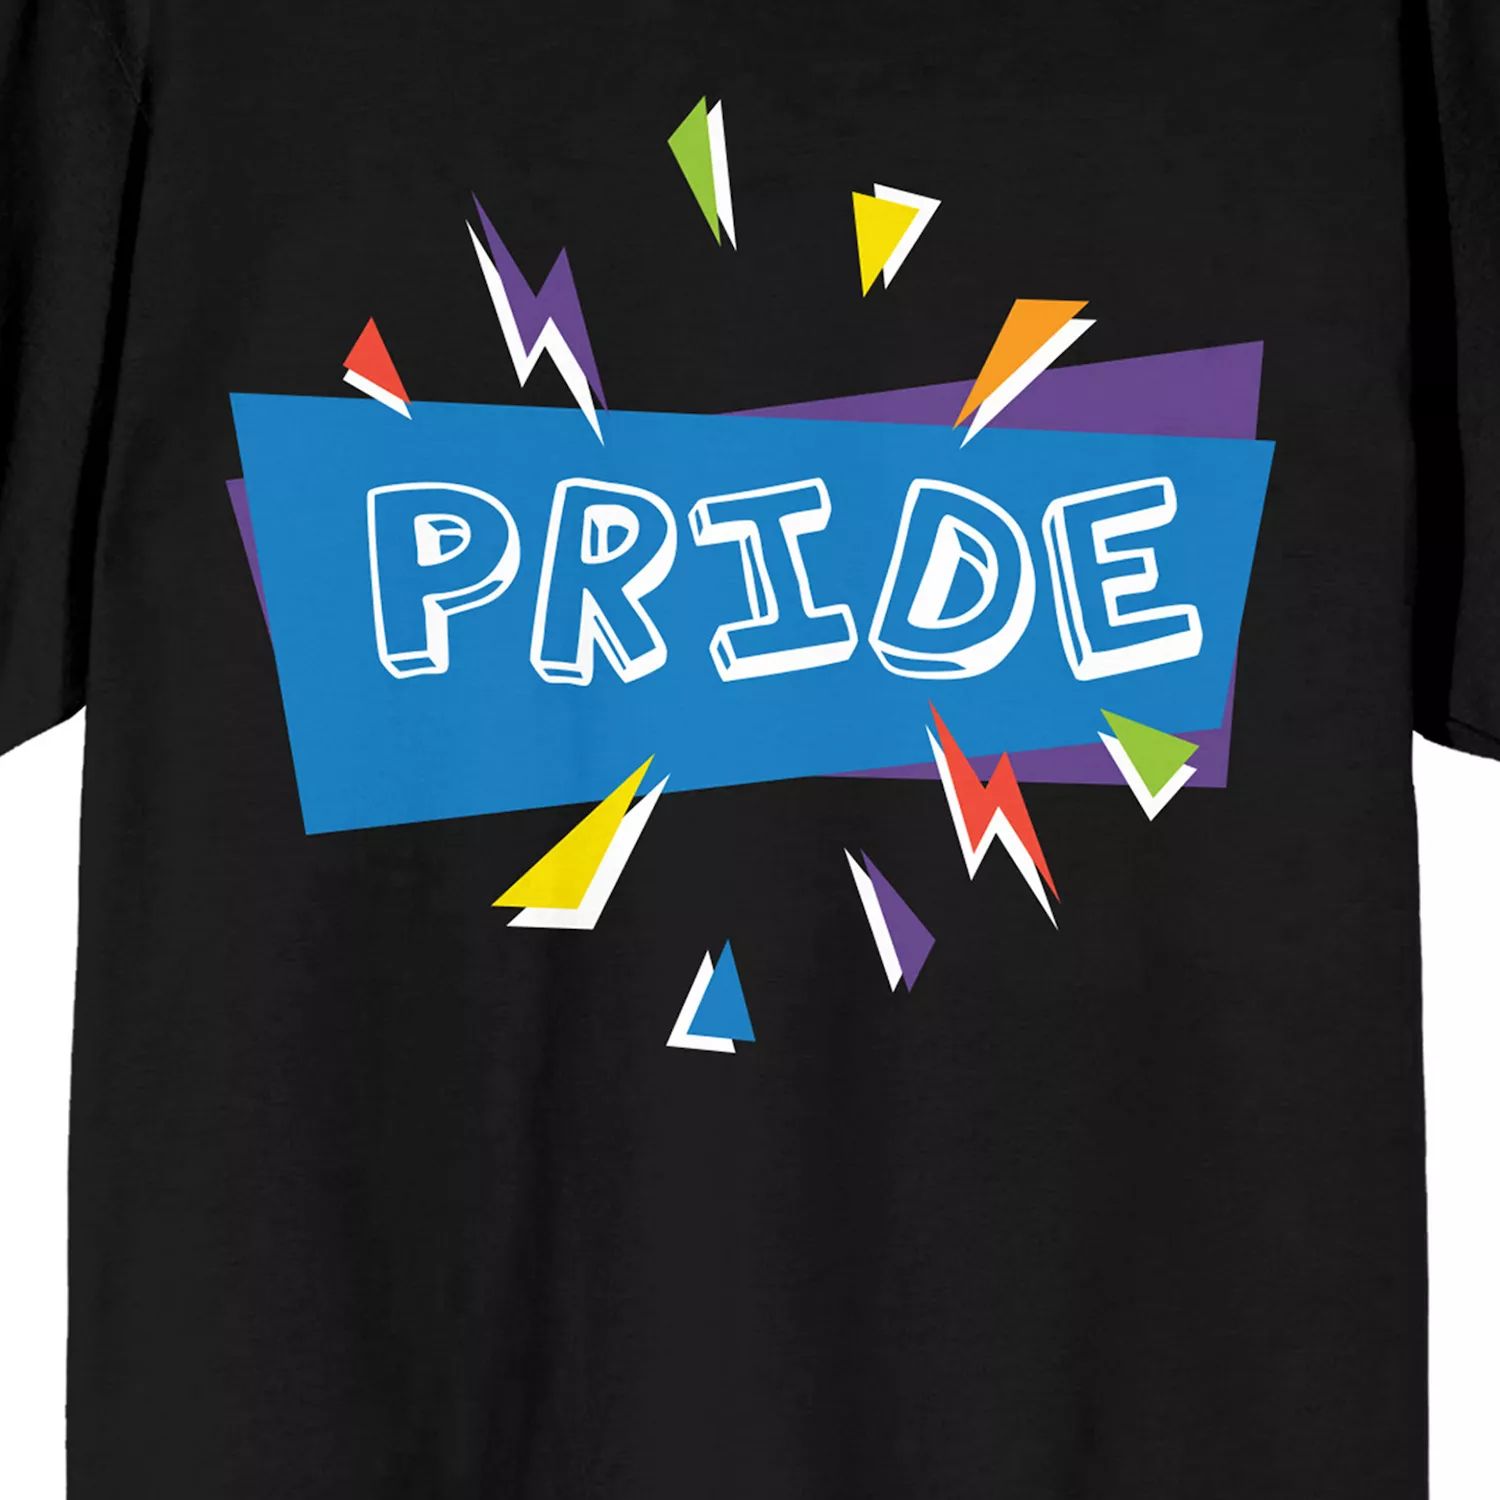 Мужская футболка Pride с конфетти Licensed Character